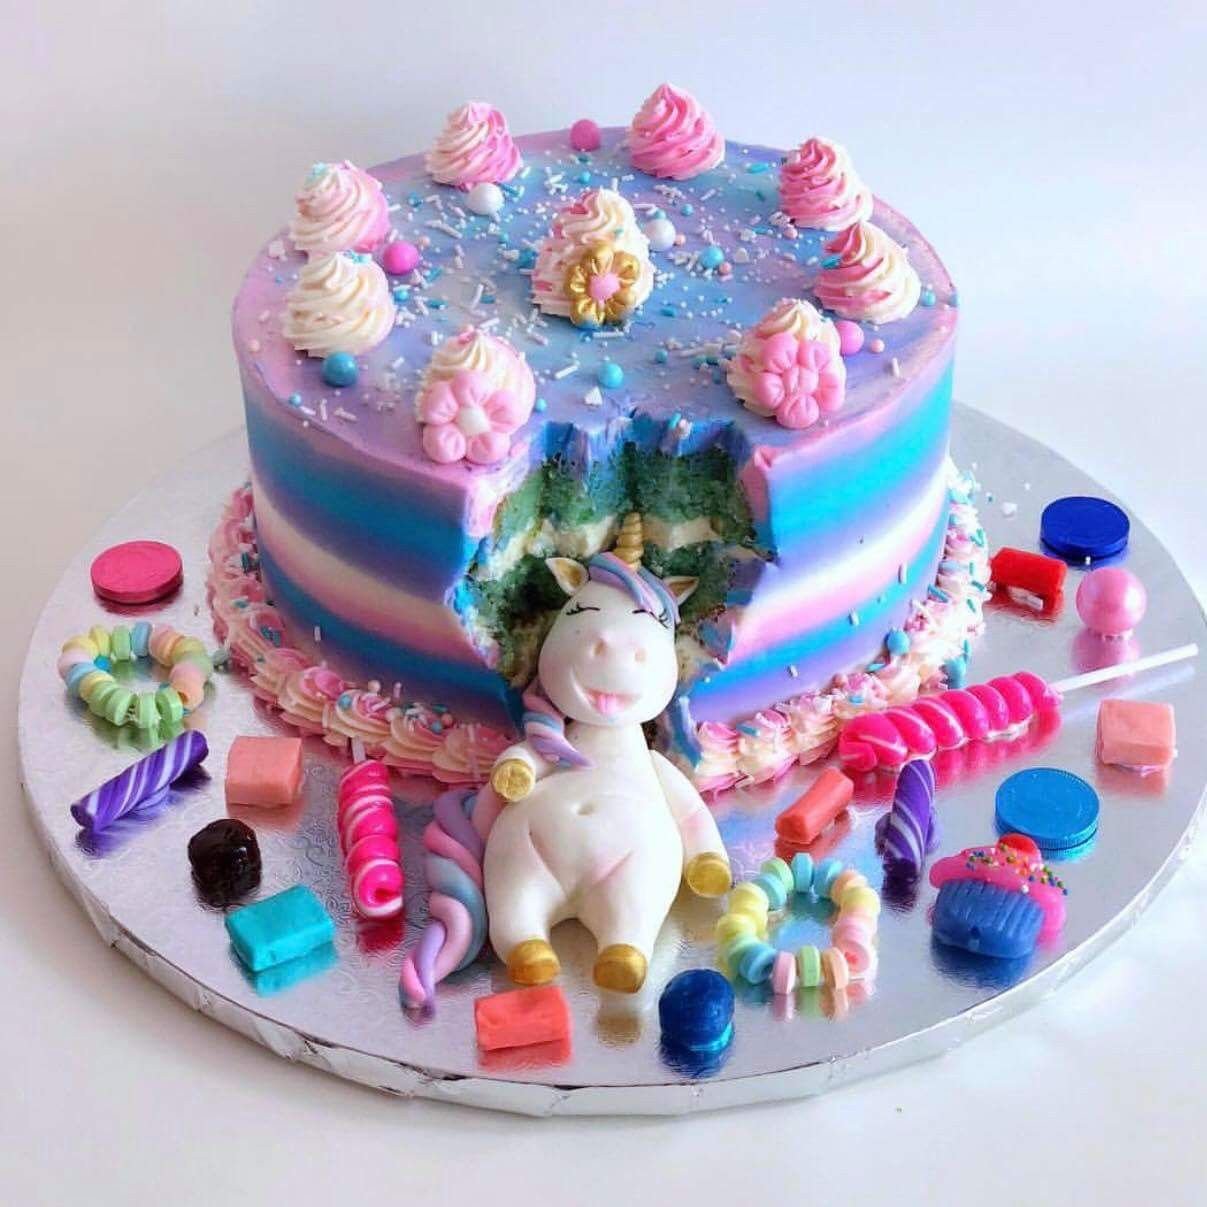 тортик 5 лет девочке на день рождения